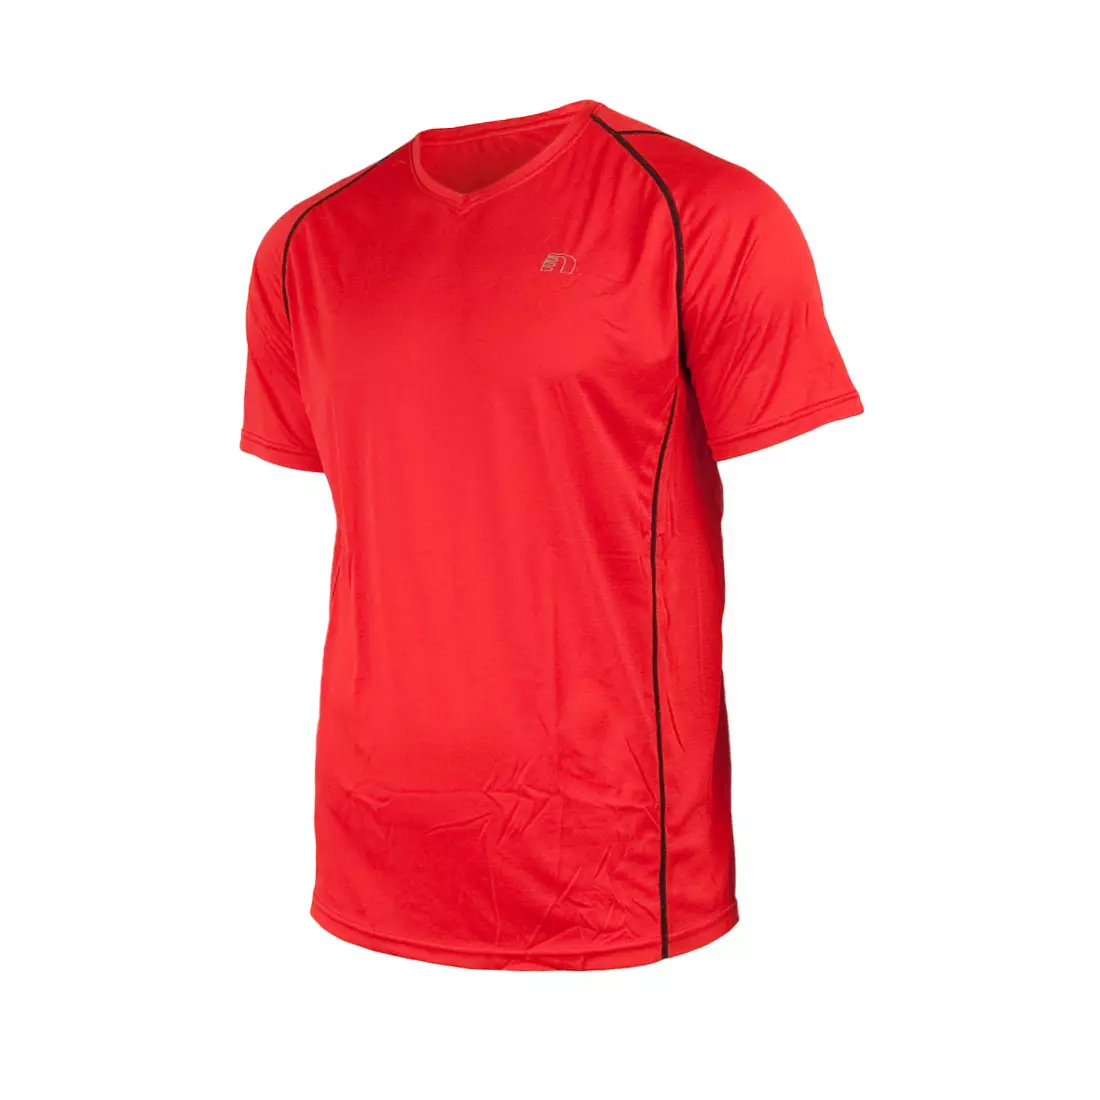 NEWLINE BASE COOLMAX TEE - tricou alergare pentru bărbați 14603-04